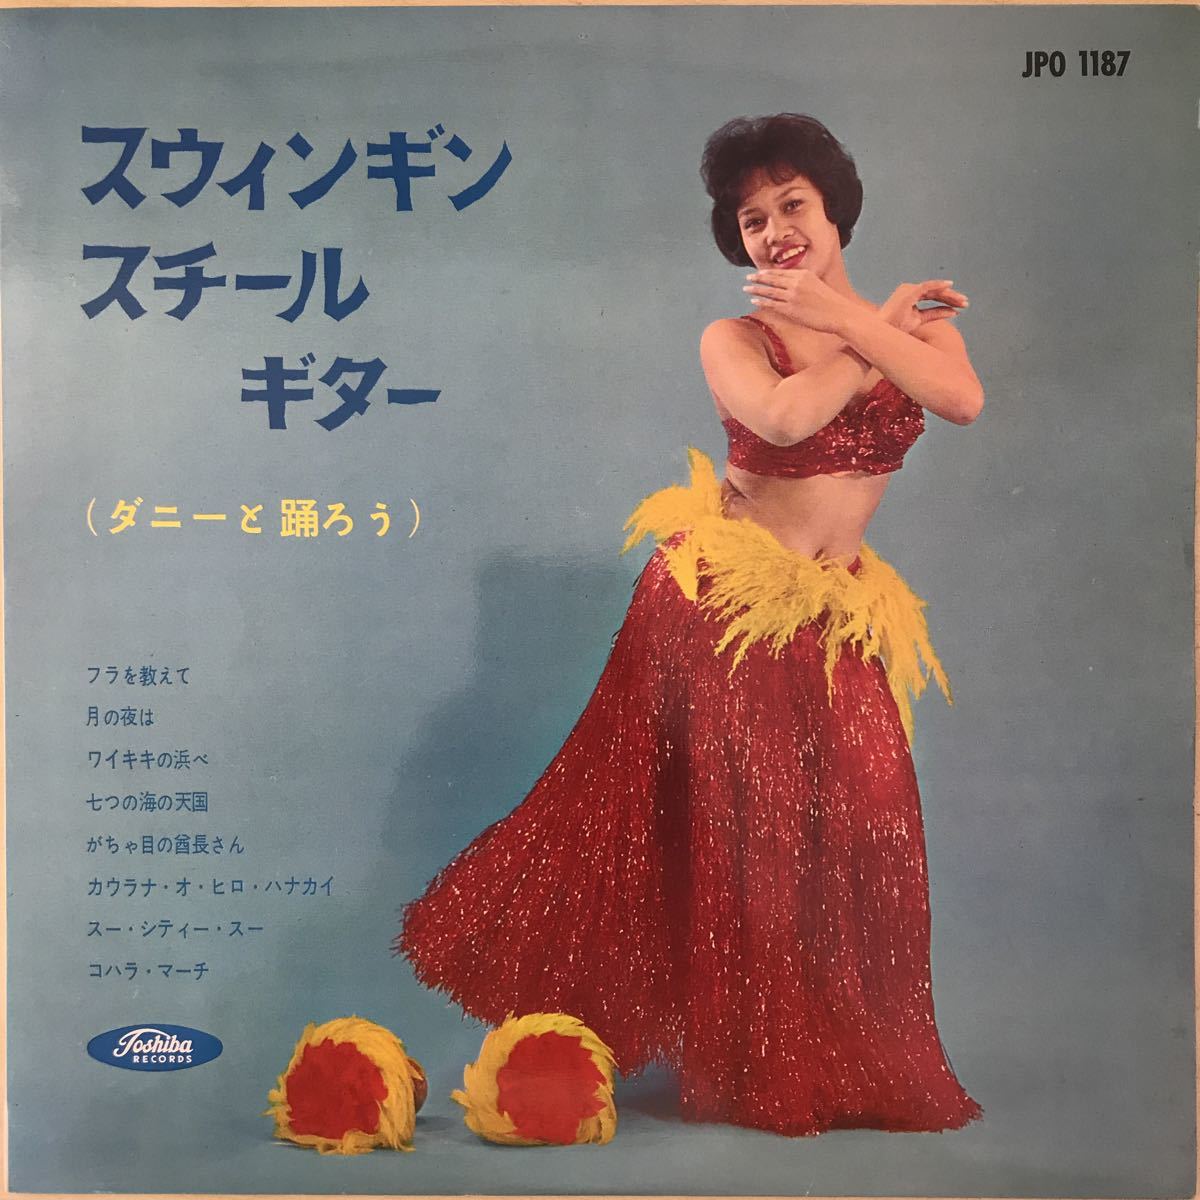 水前寺清子「どうどうどっこの唄」「かぎりある身の」 1966年 EP